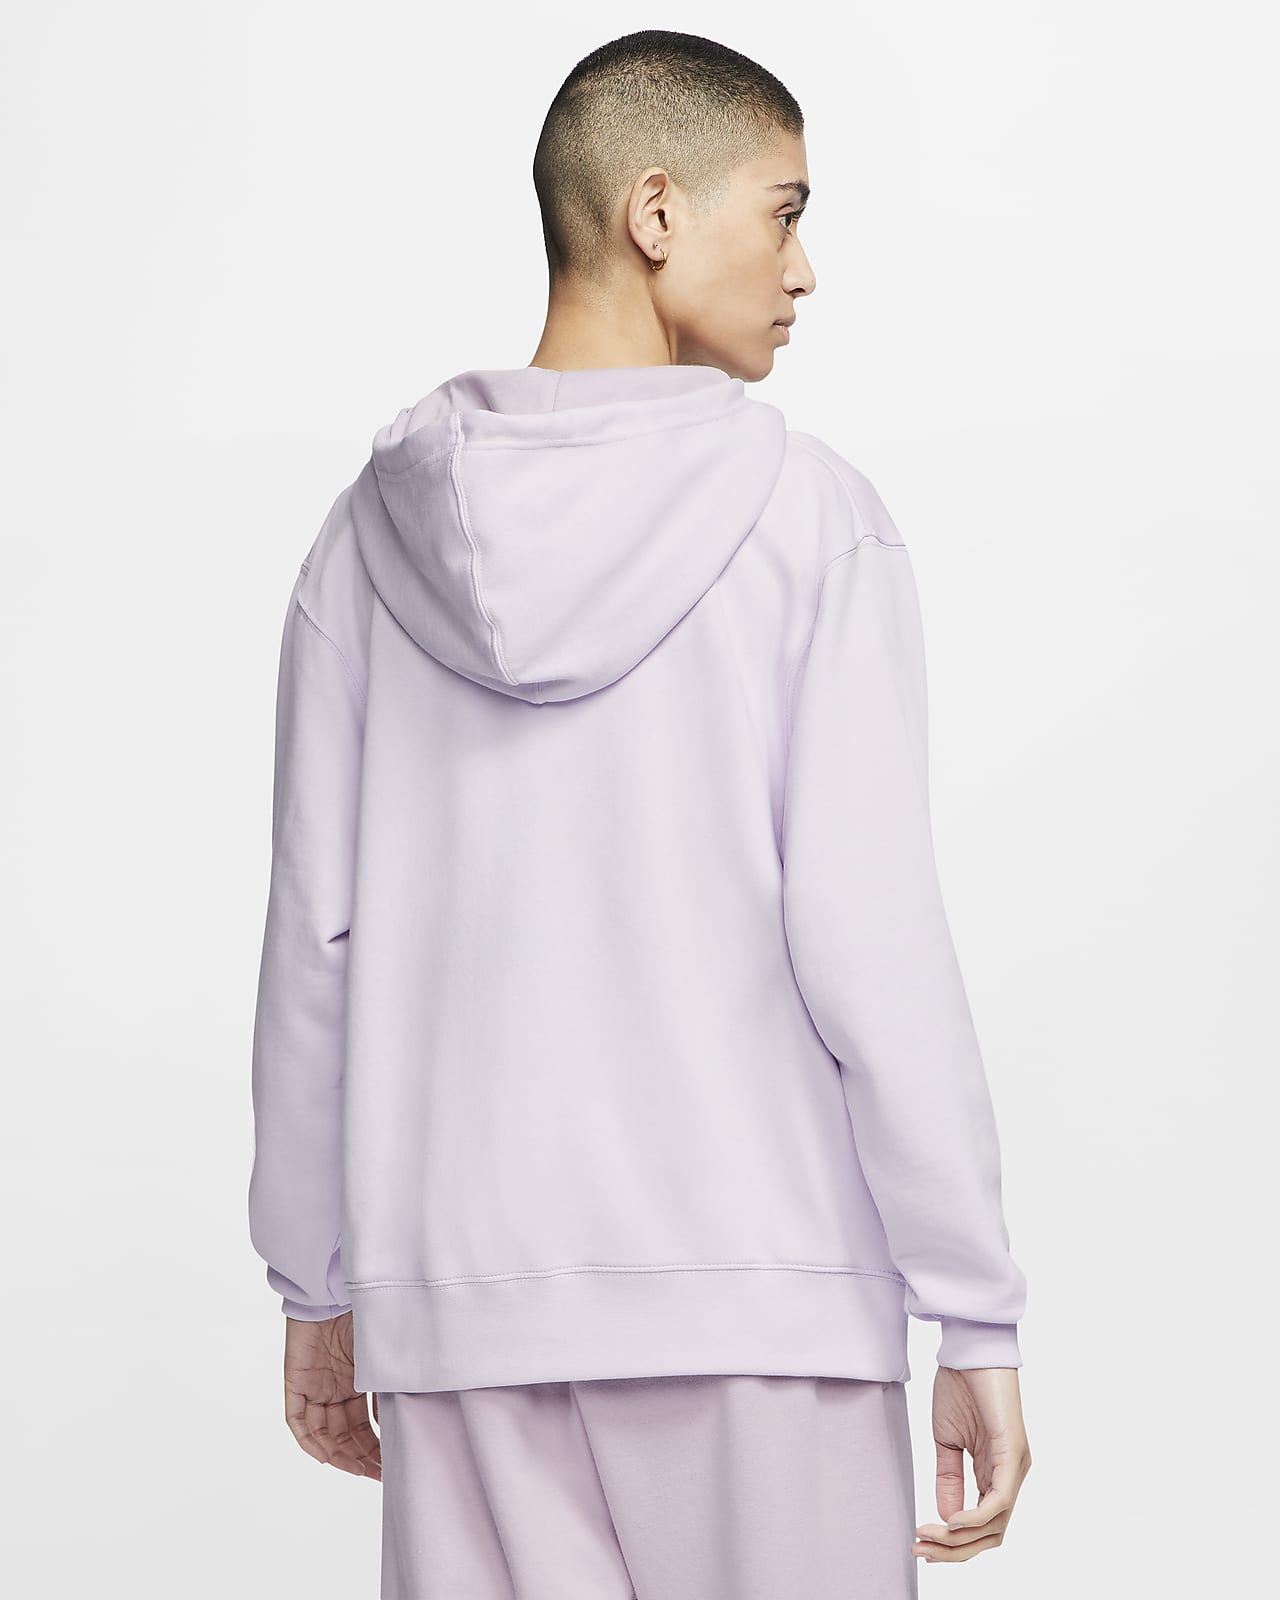 nike swoosh hoodie sweatshirt lilac